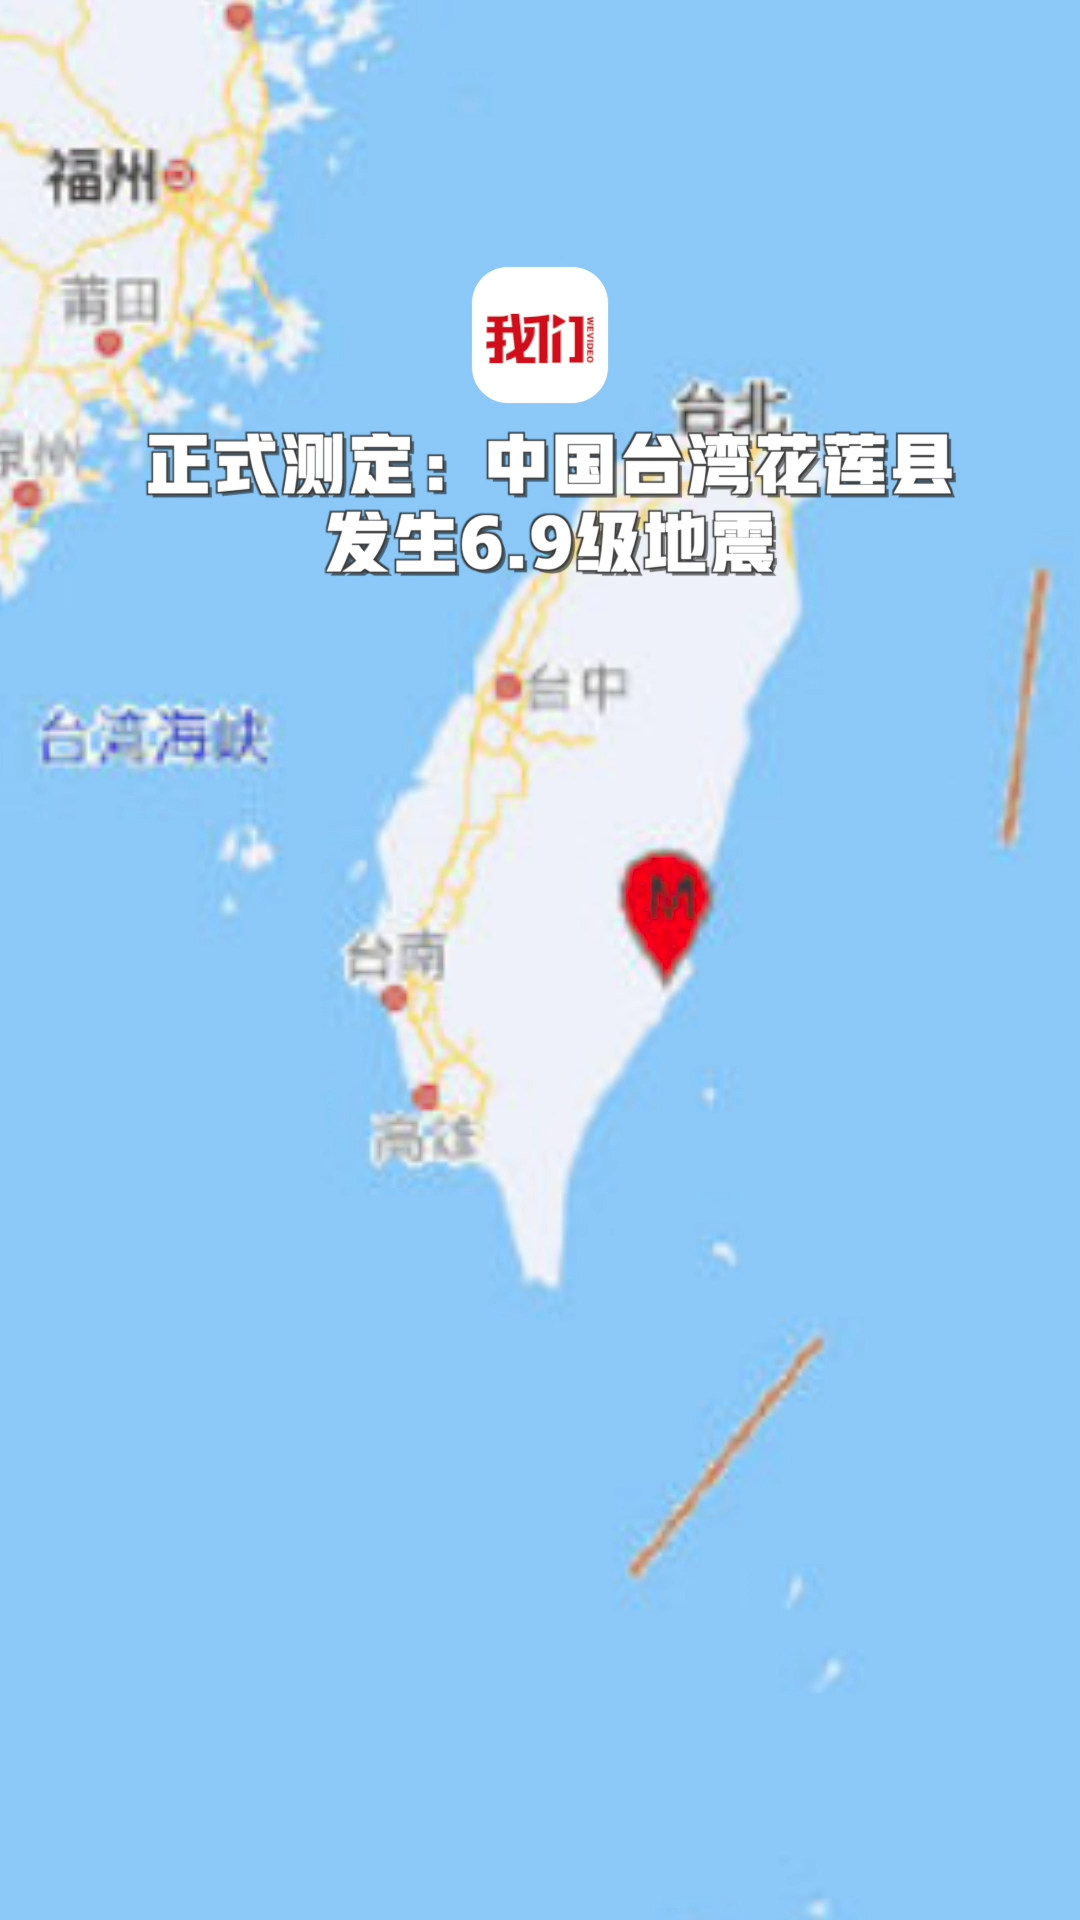 中国台湾花莲县发生69级地震 震源深度10千米